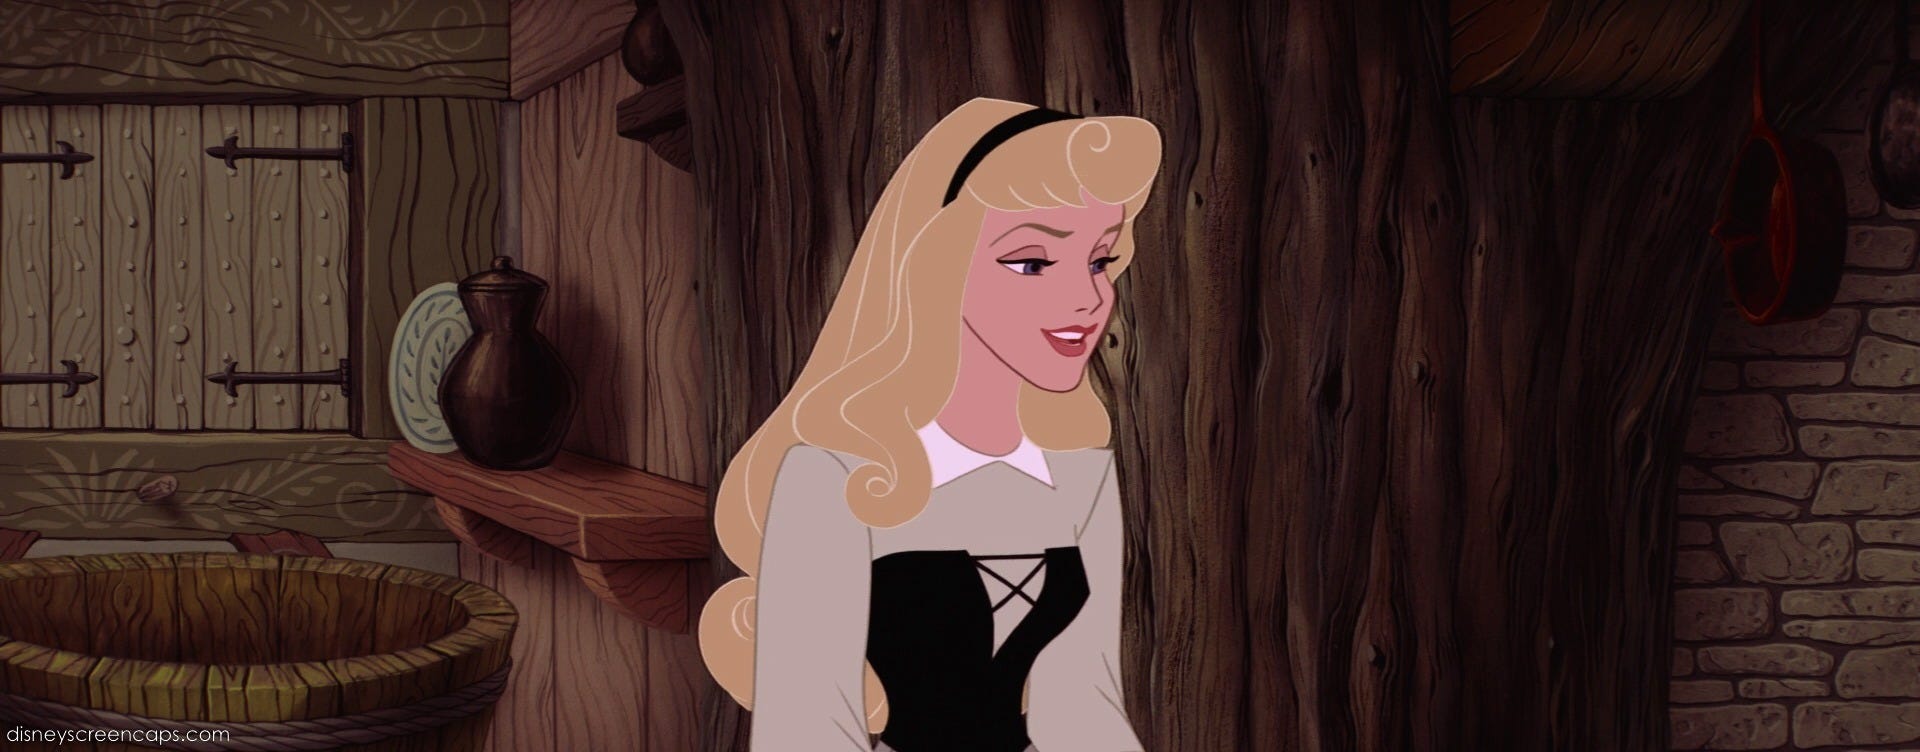 Aurora, a Princesa mais desvalorizada da Disney!